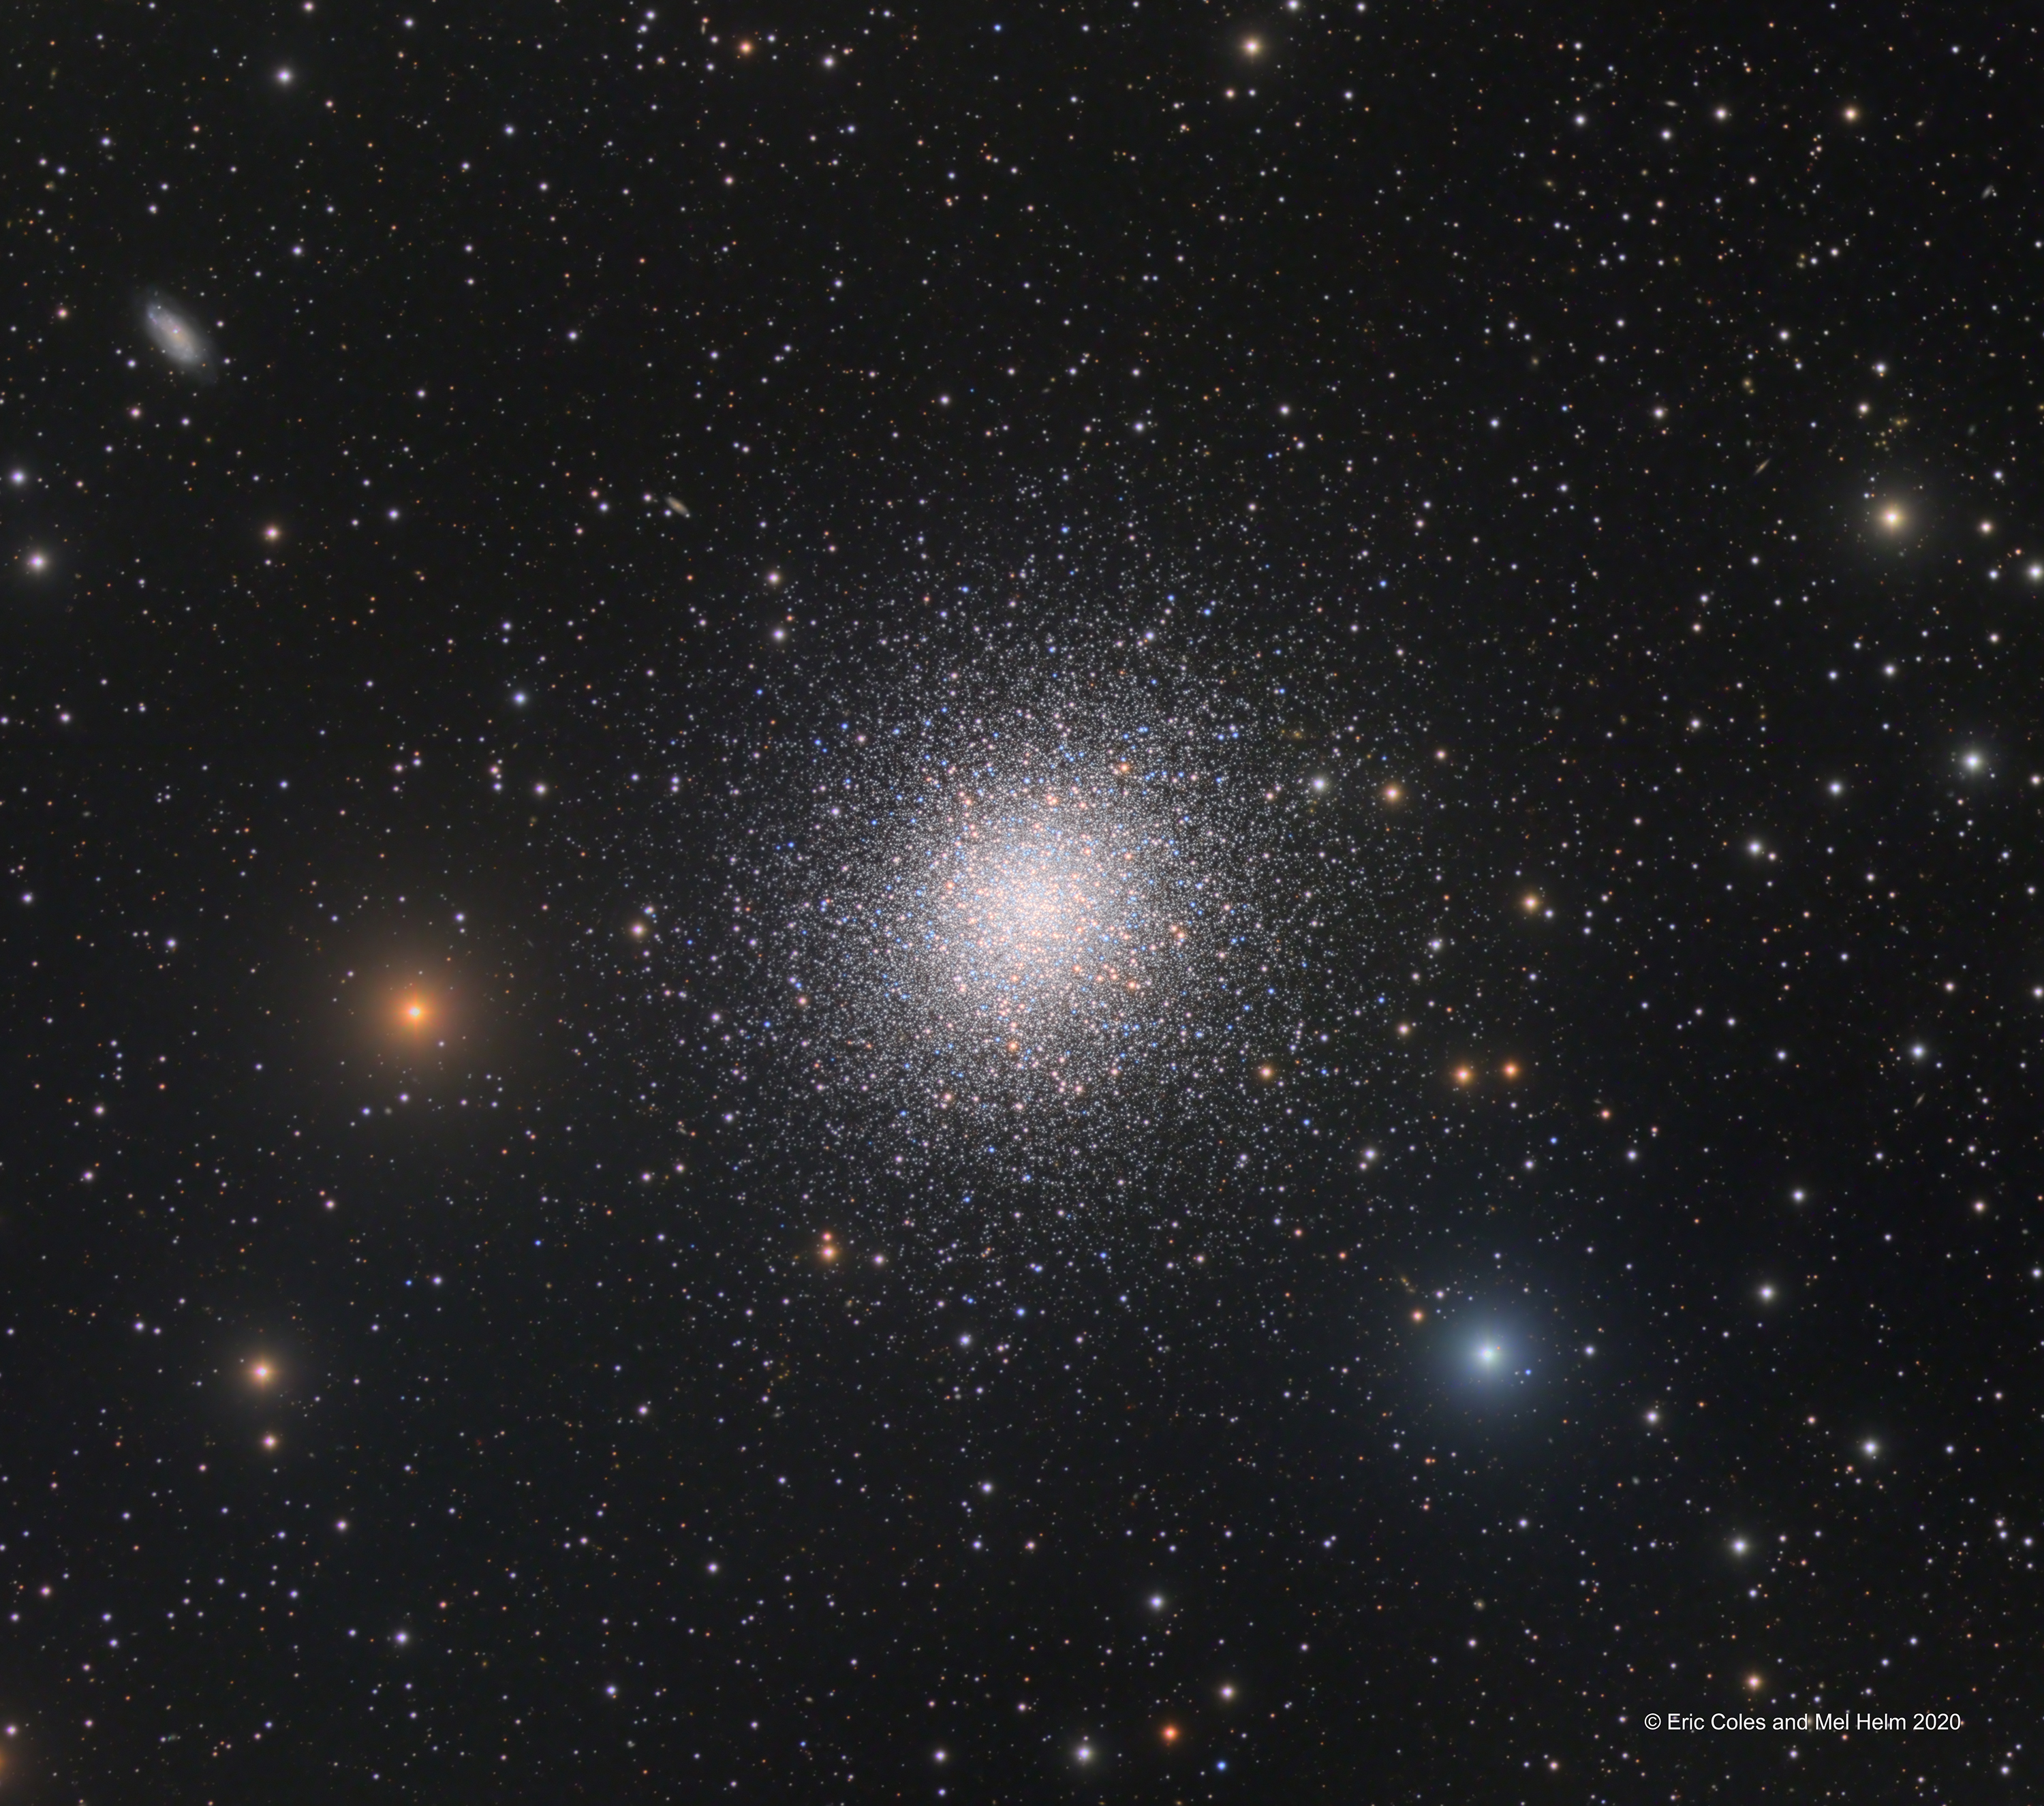 Messier13_HelmColes.jpg